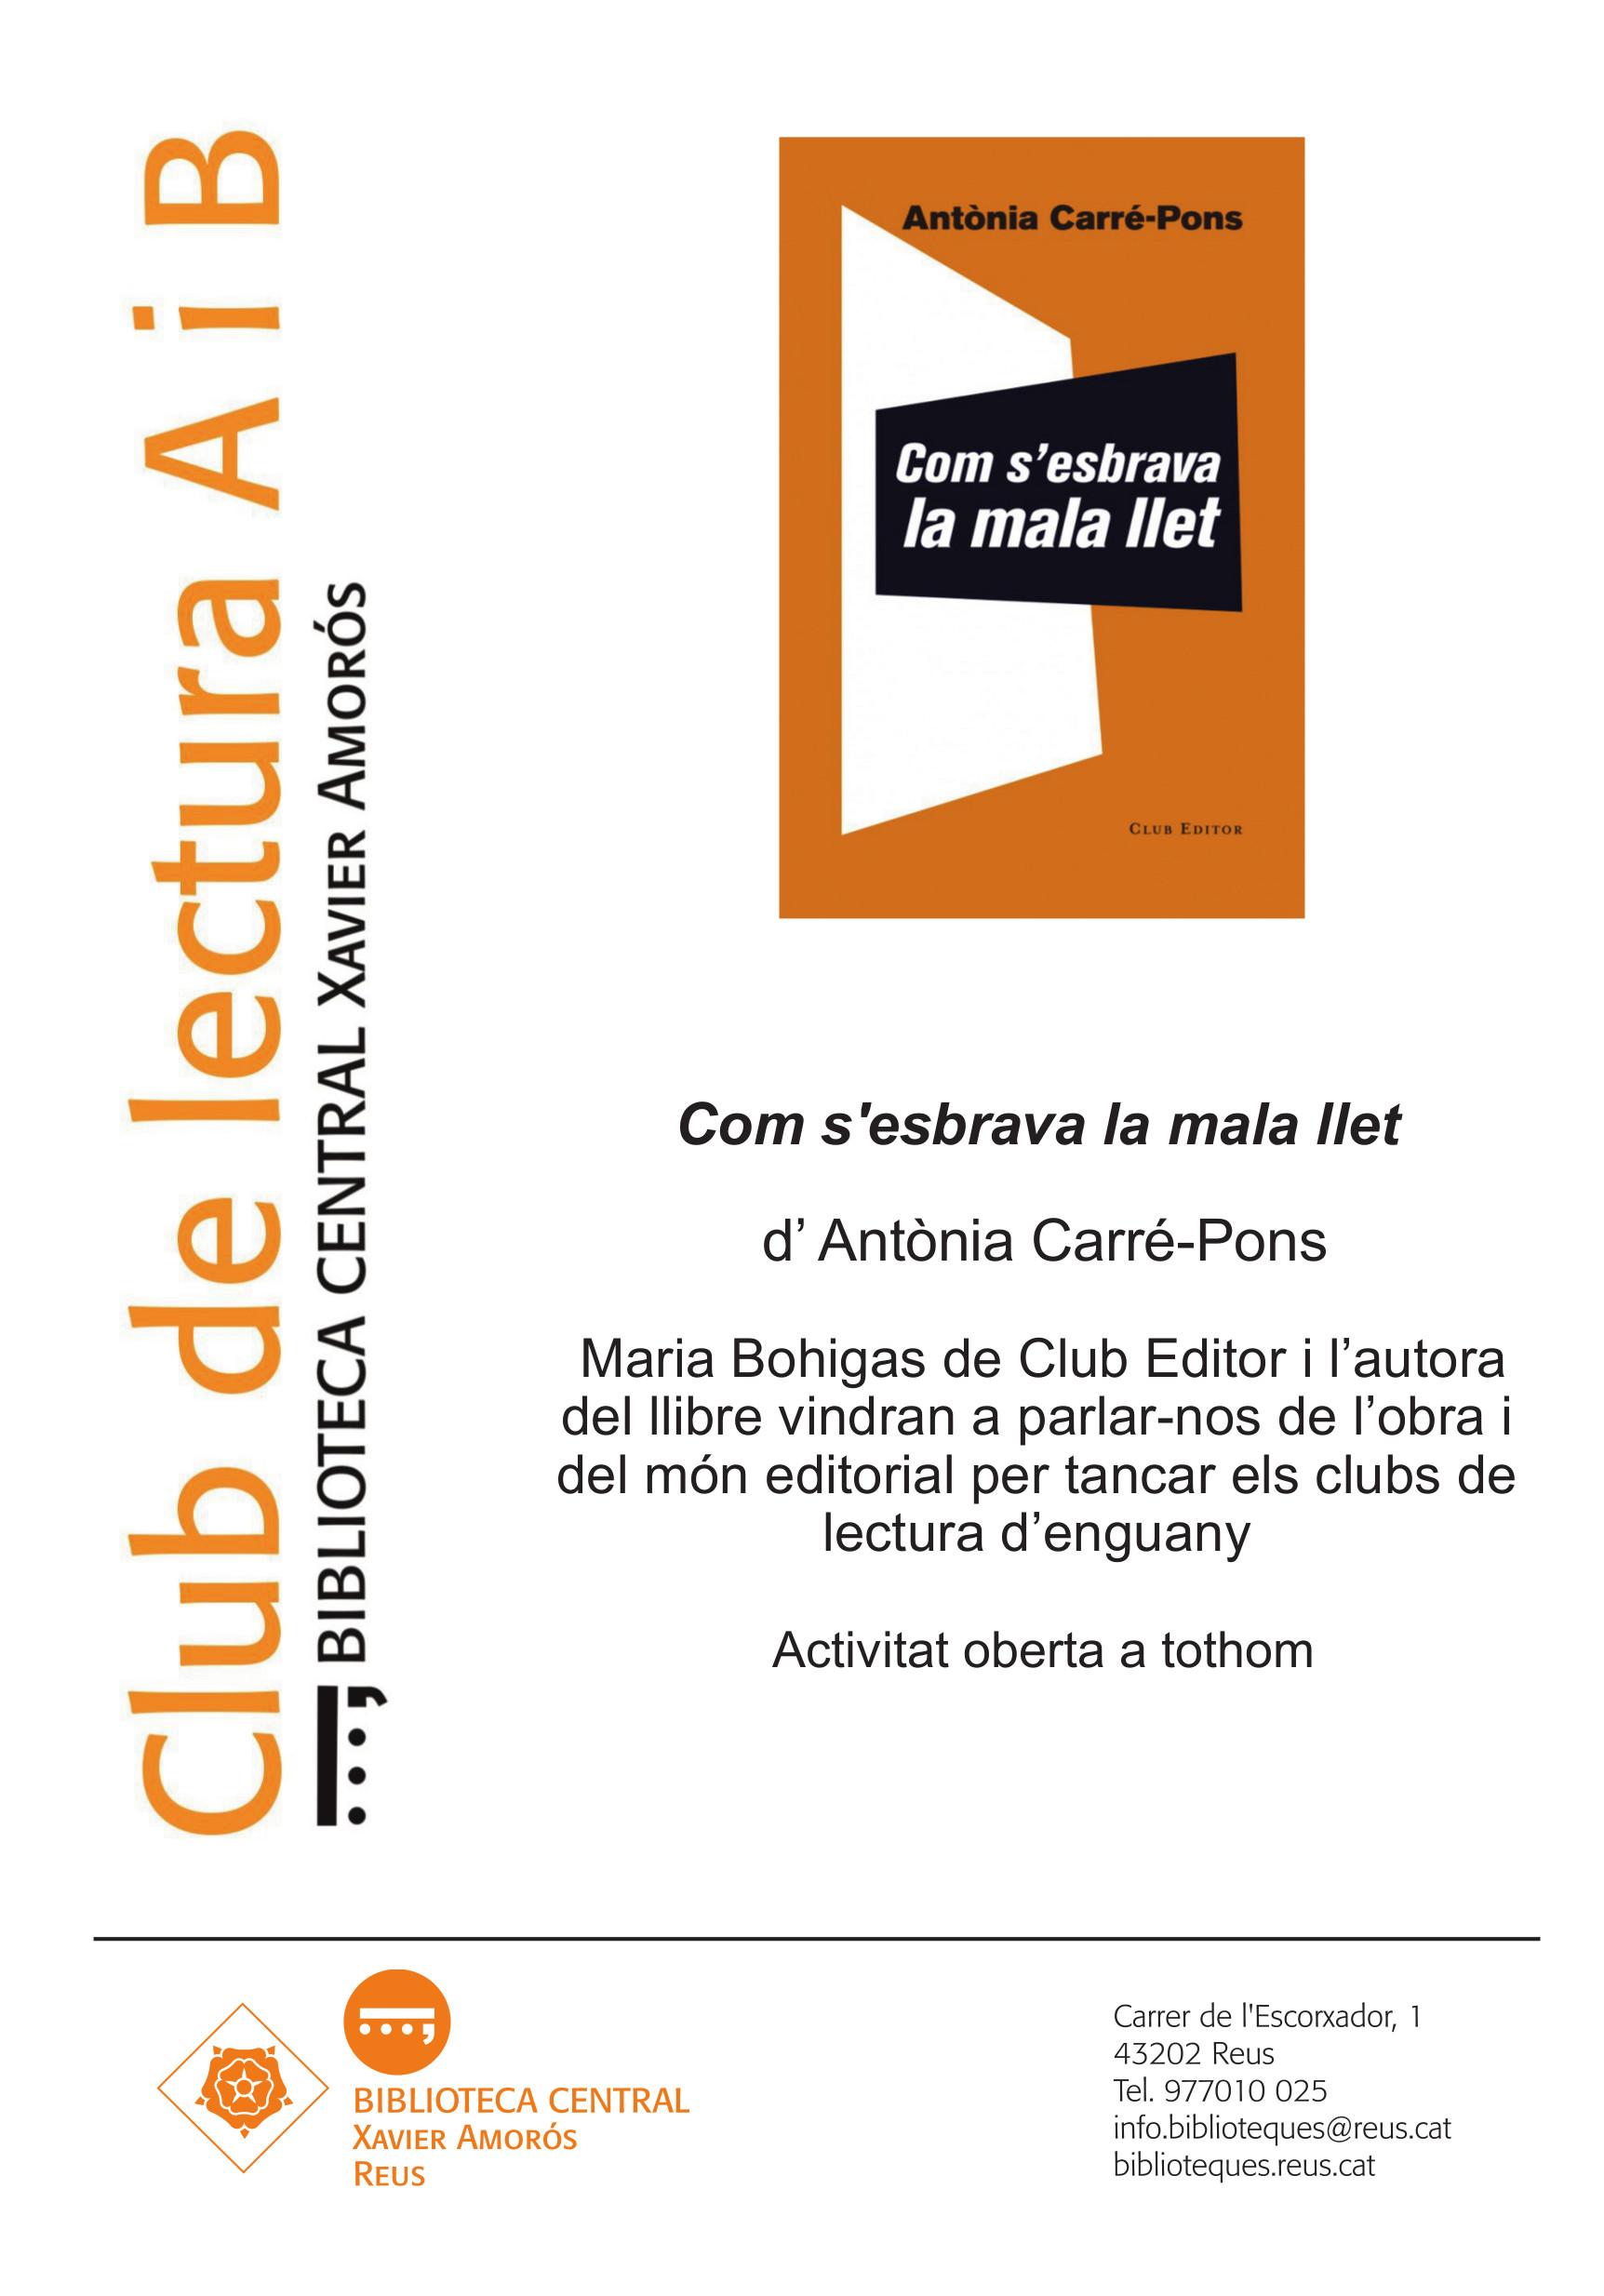 Maria Bohigas de Club Editor tanca els clubs de lectura d'enguany